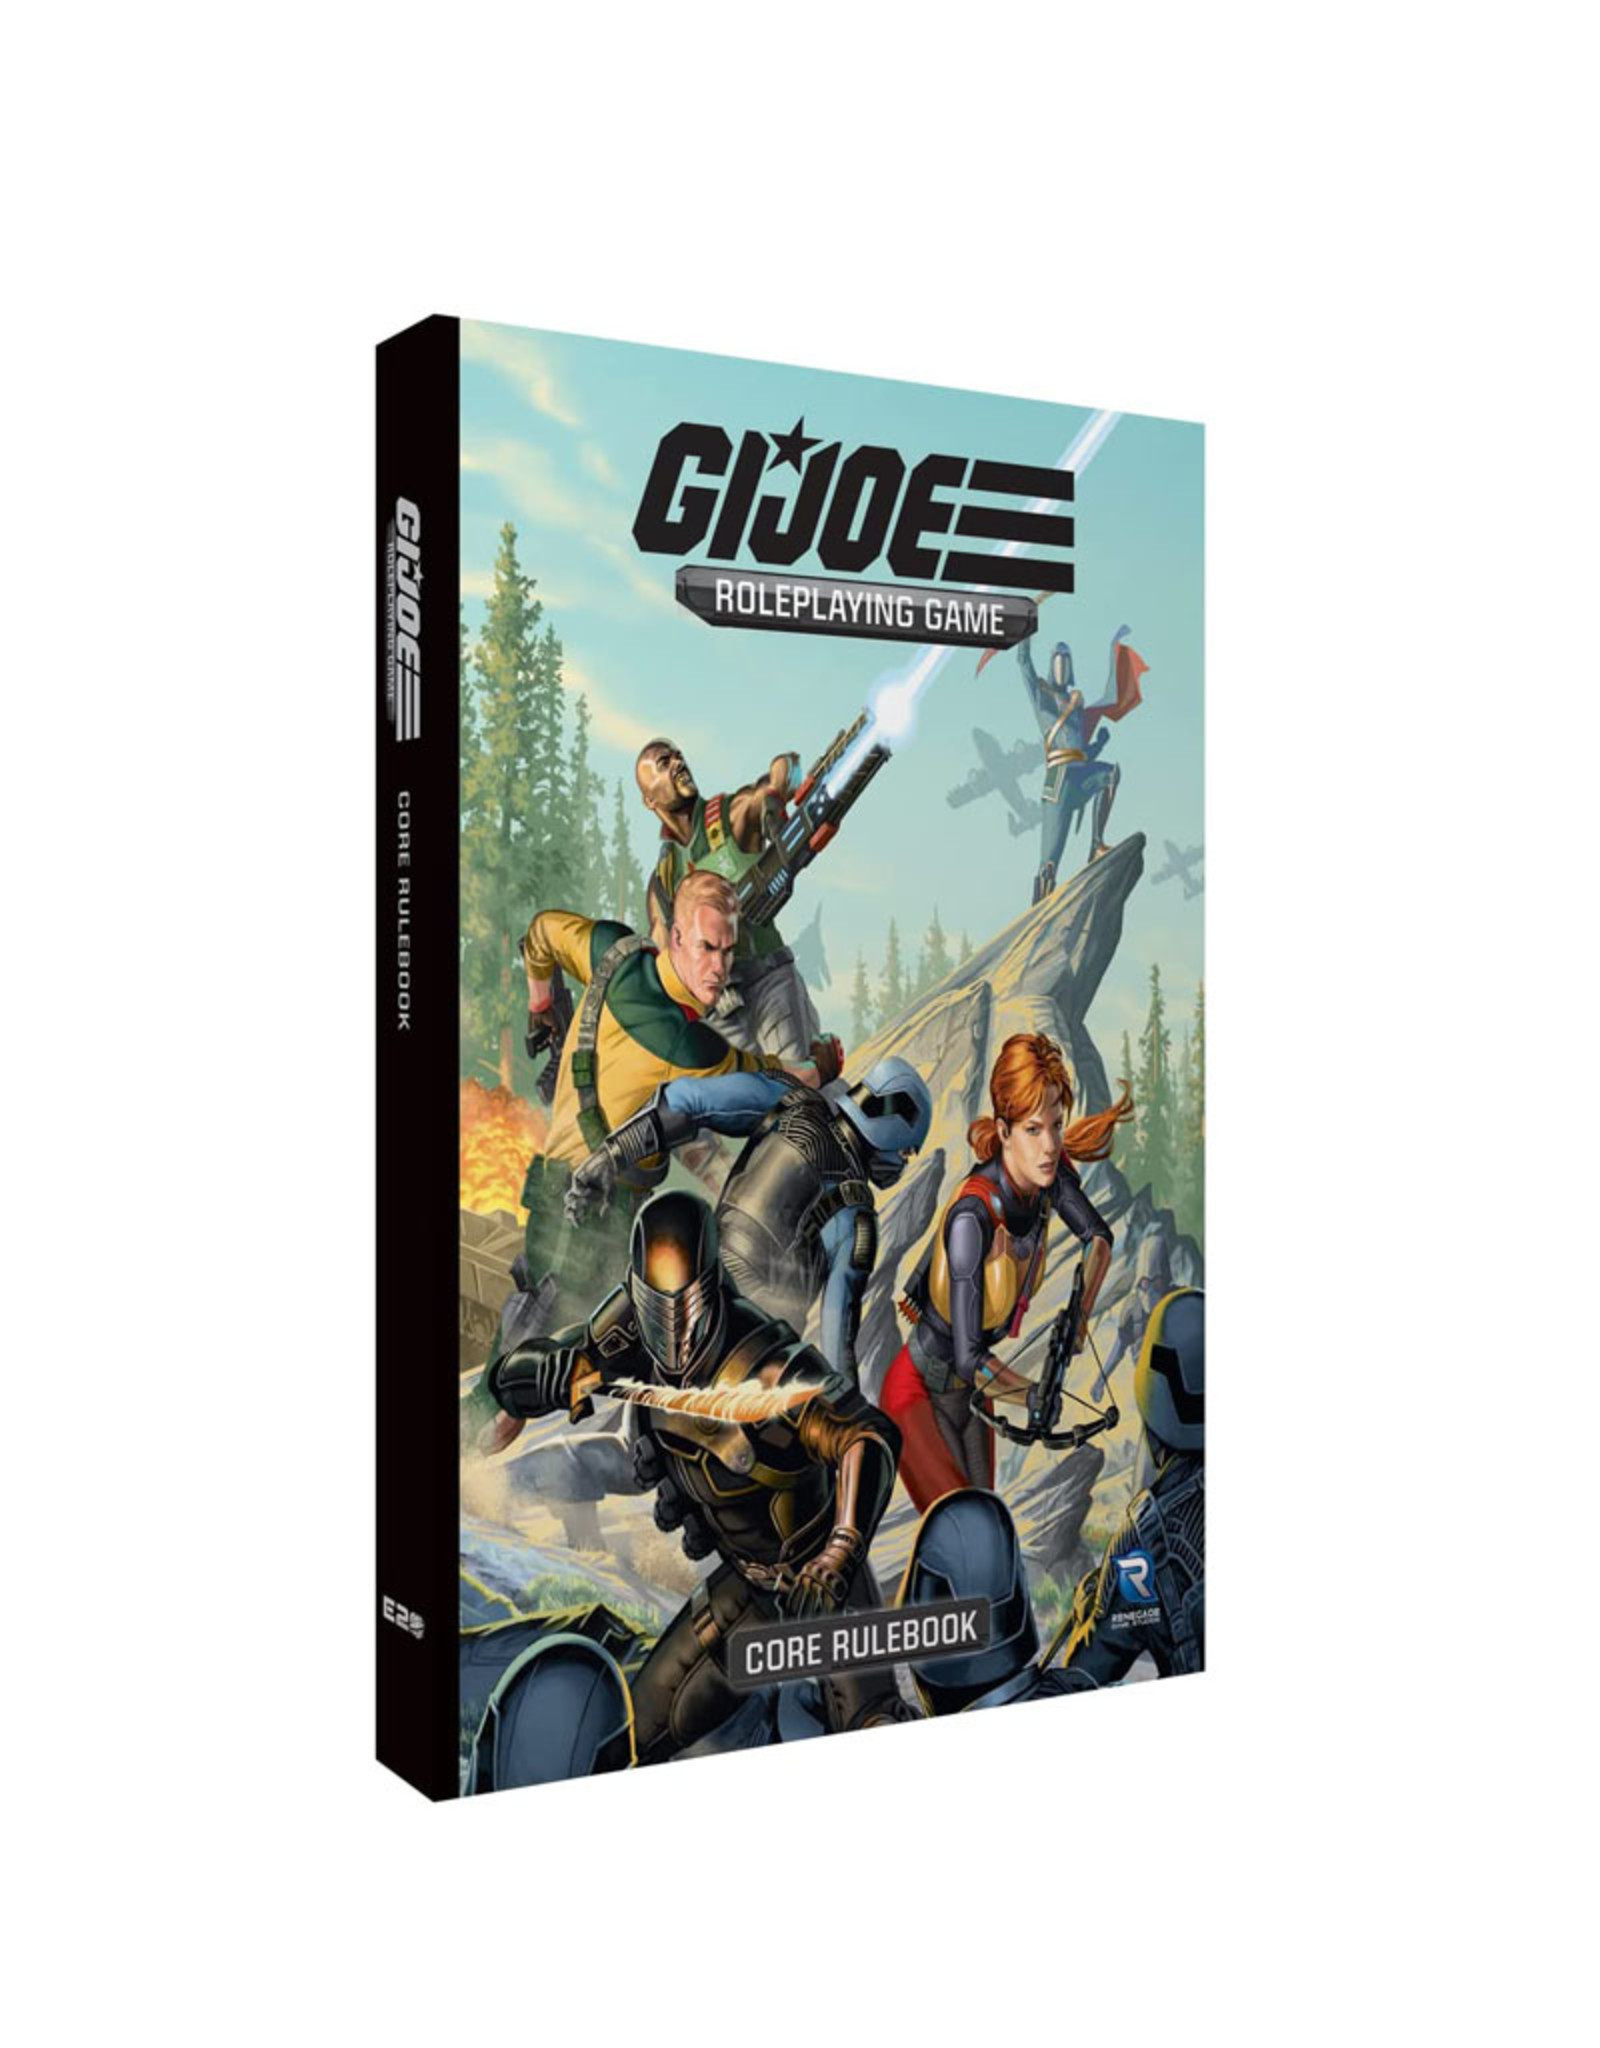 GI JOE RPG Core Rulebook